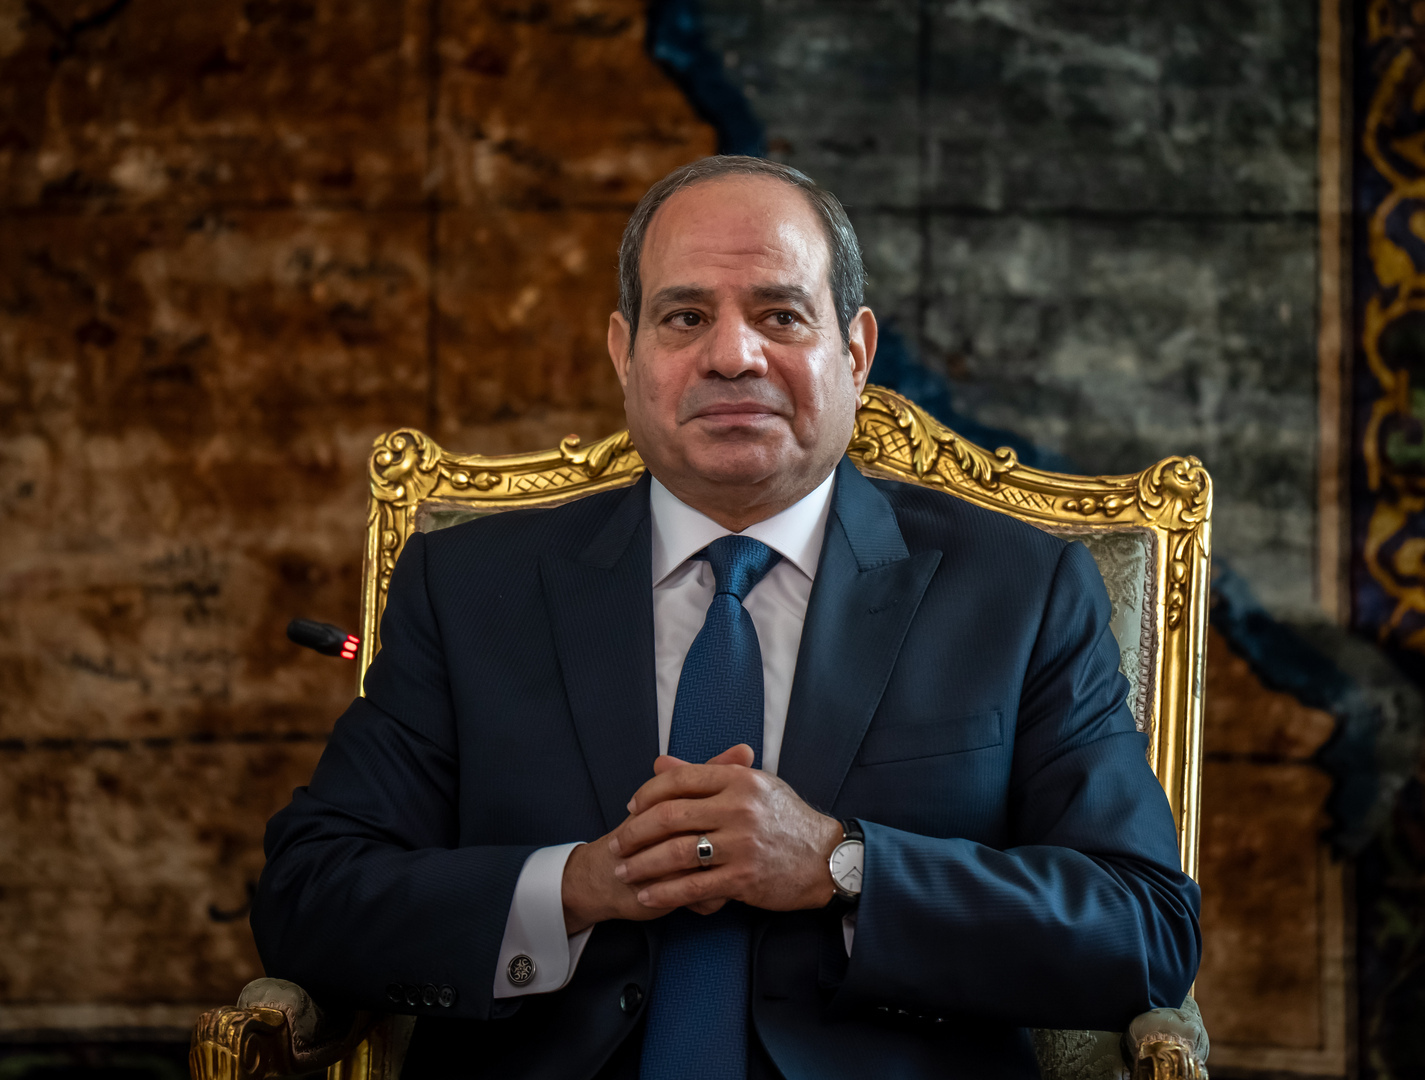 الإعلام المصري في خبر عاجل: السيسي يصدر توجيهات للحكومة حول انقطاعات الكهرباء